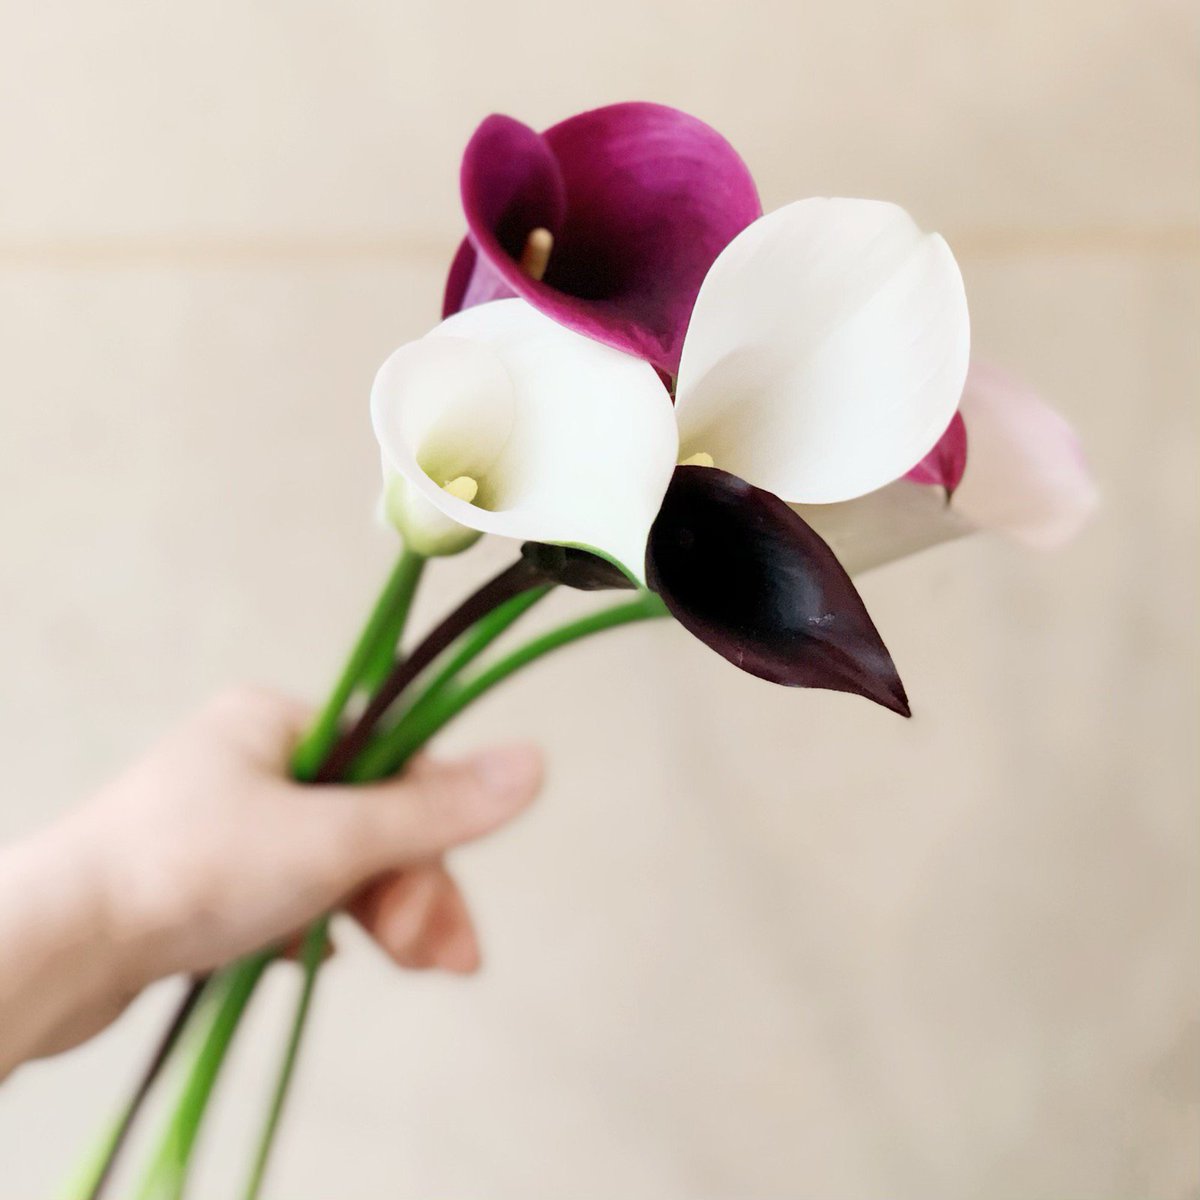 いろは花店 とてもきれいなカラーの切り花を入荷いたしました 黒のカラーもあり とってもおしゃれです 滋賀県 守山市 滋賀の花屋さん 花 カラー 入荷 花屋